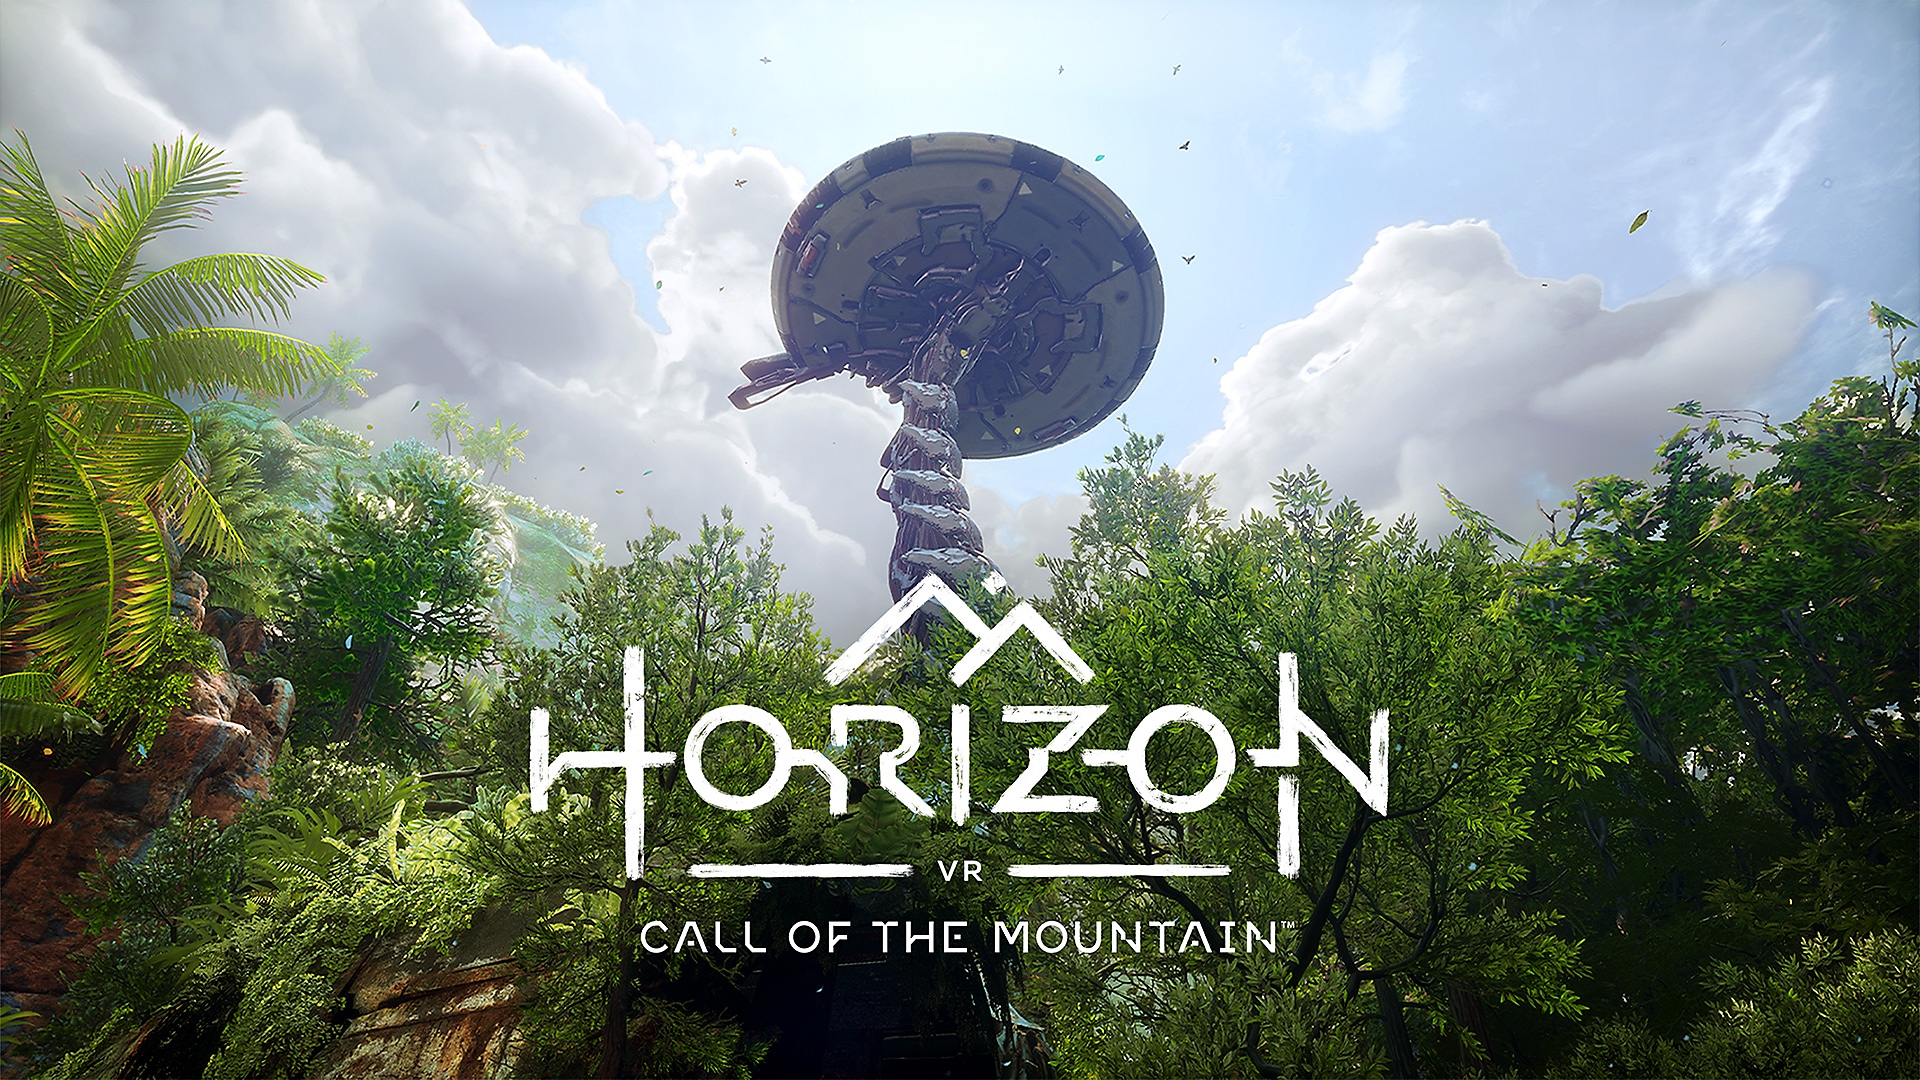 Horizon Call of the Mountain - Teaser Trailer